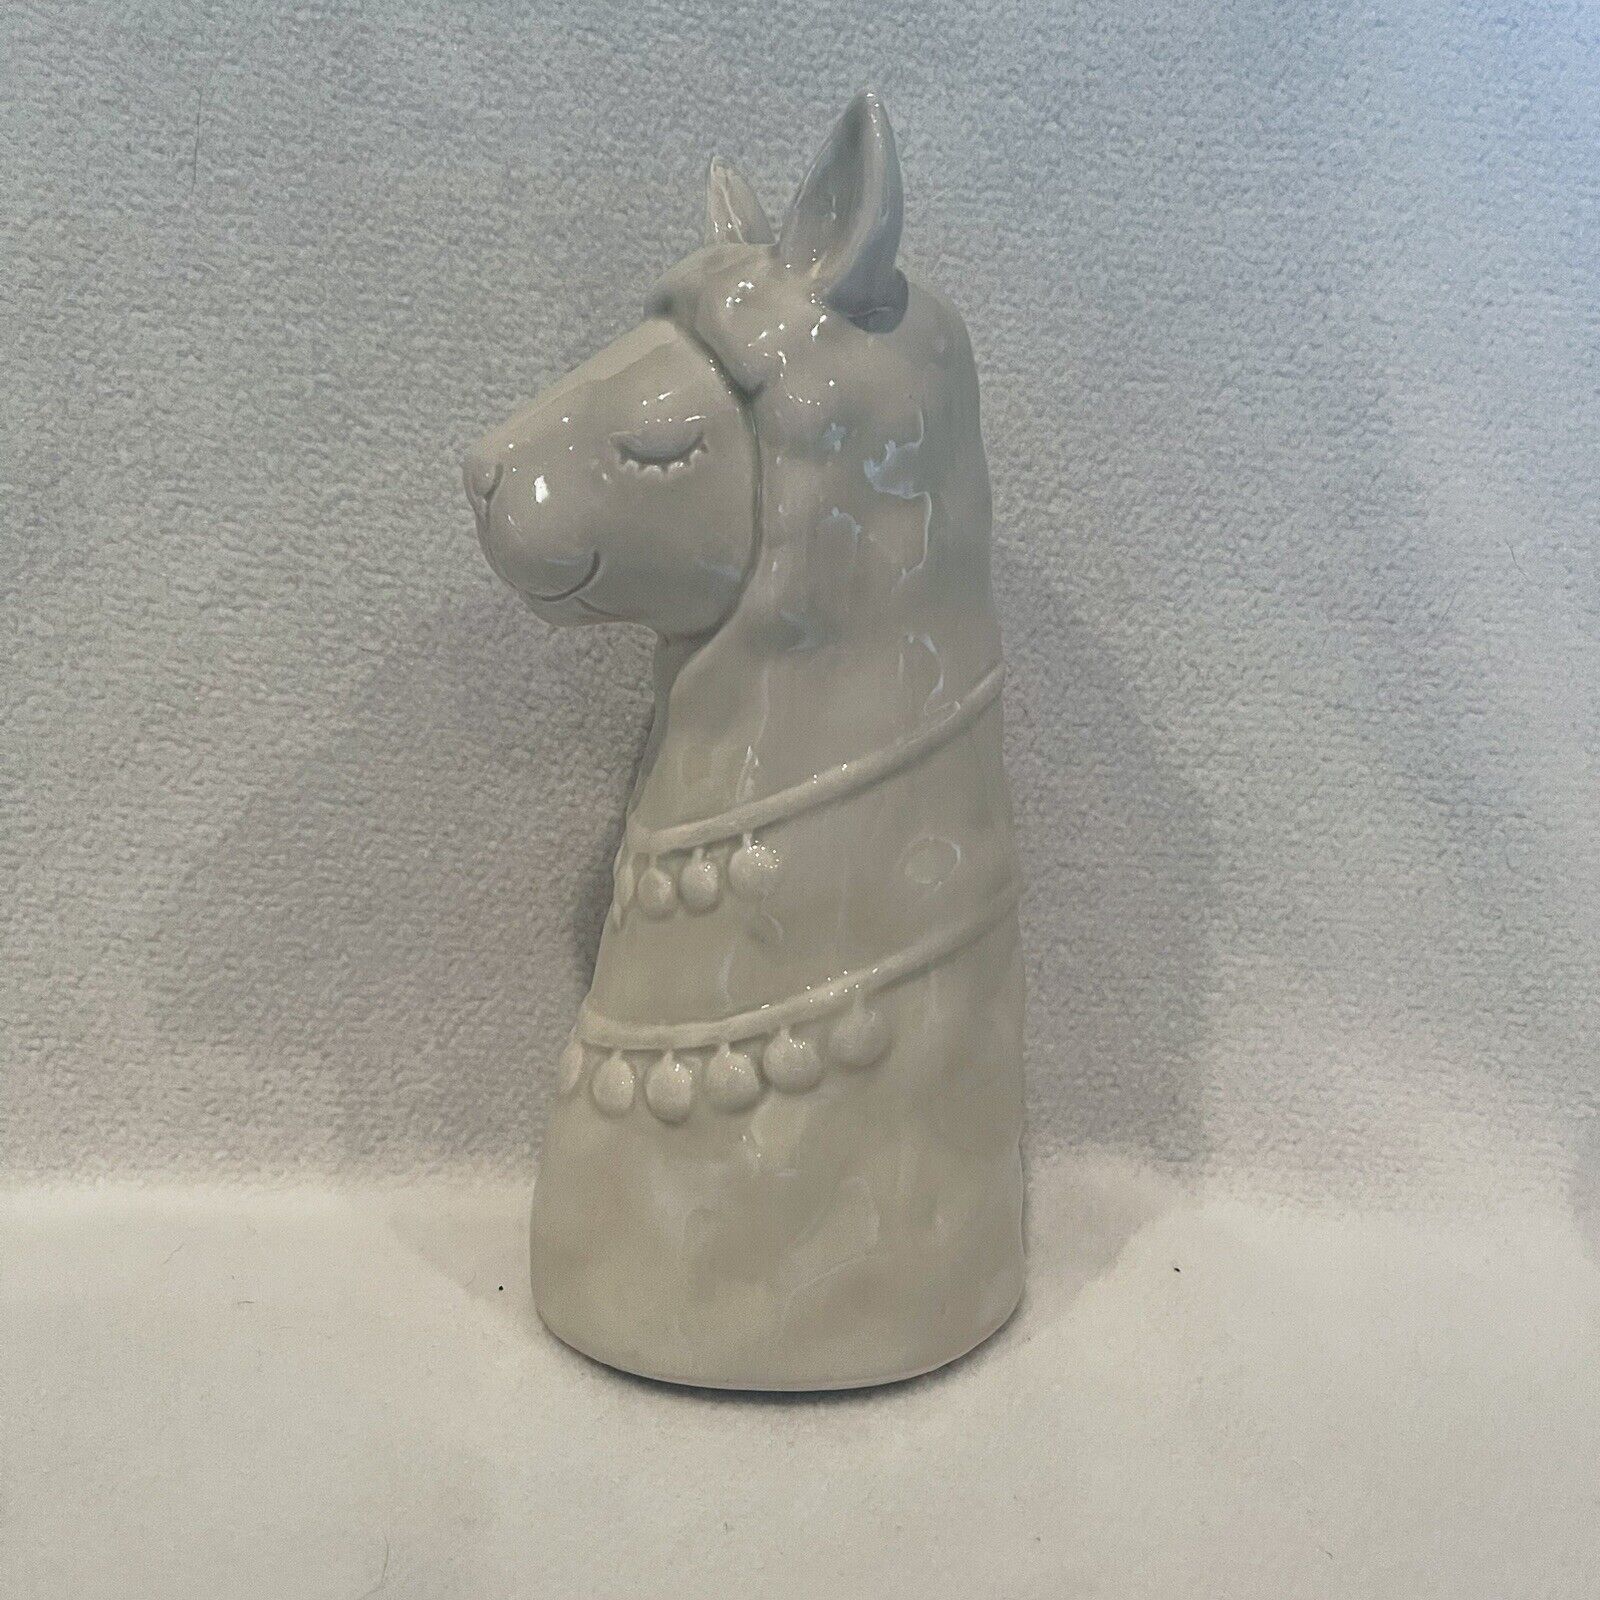 Ceramic Shaped Llama Vase Cream Colored W/ Textured Details